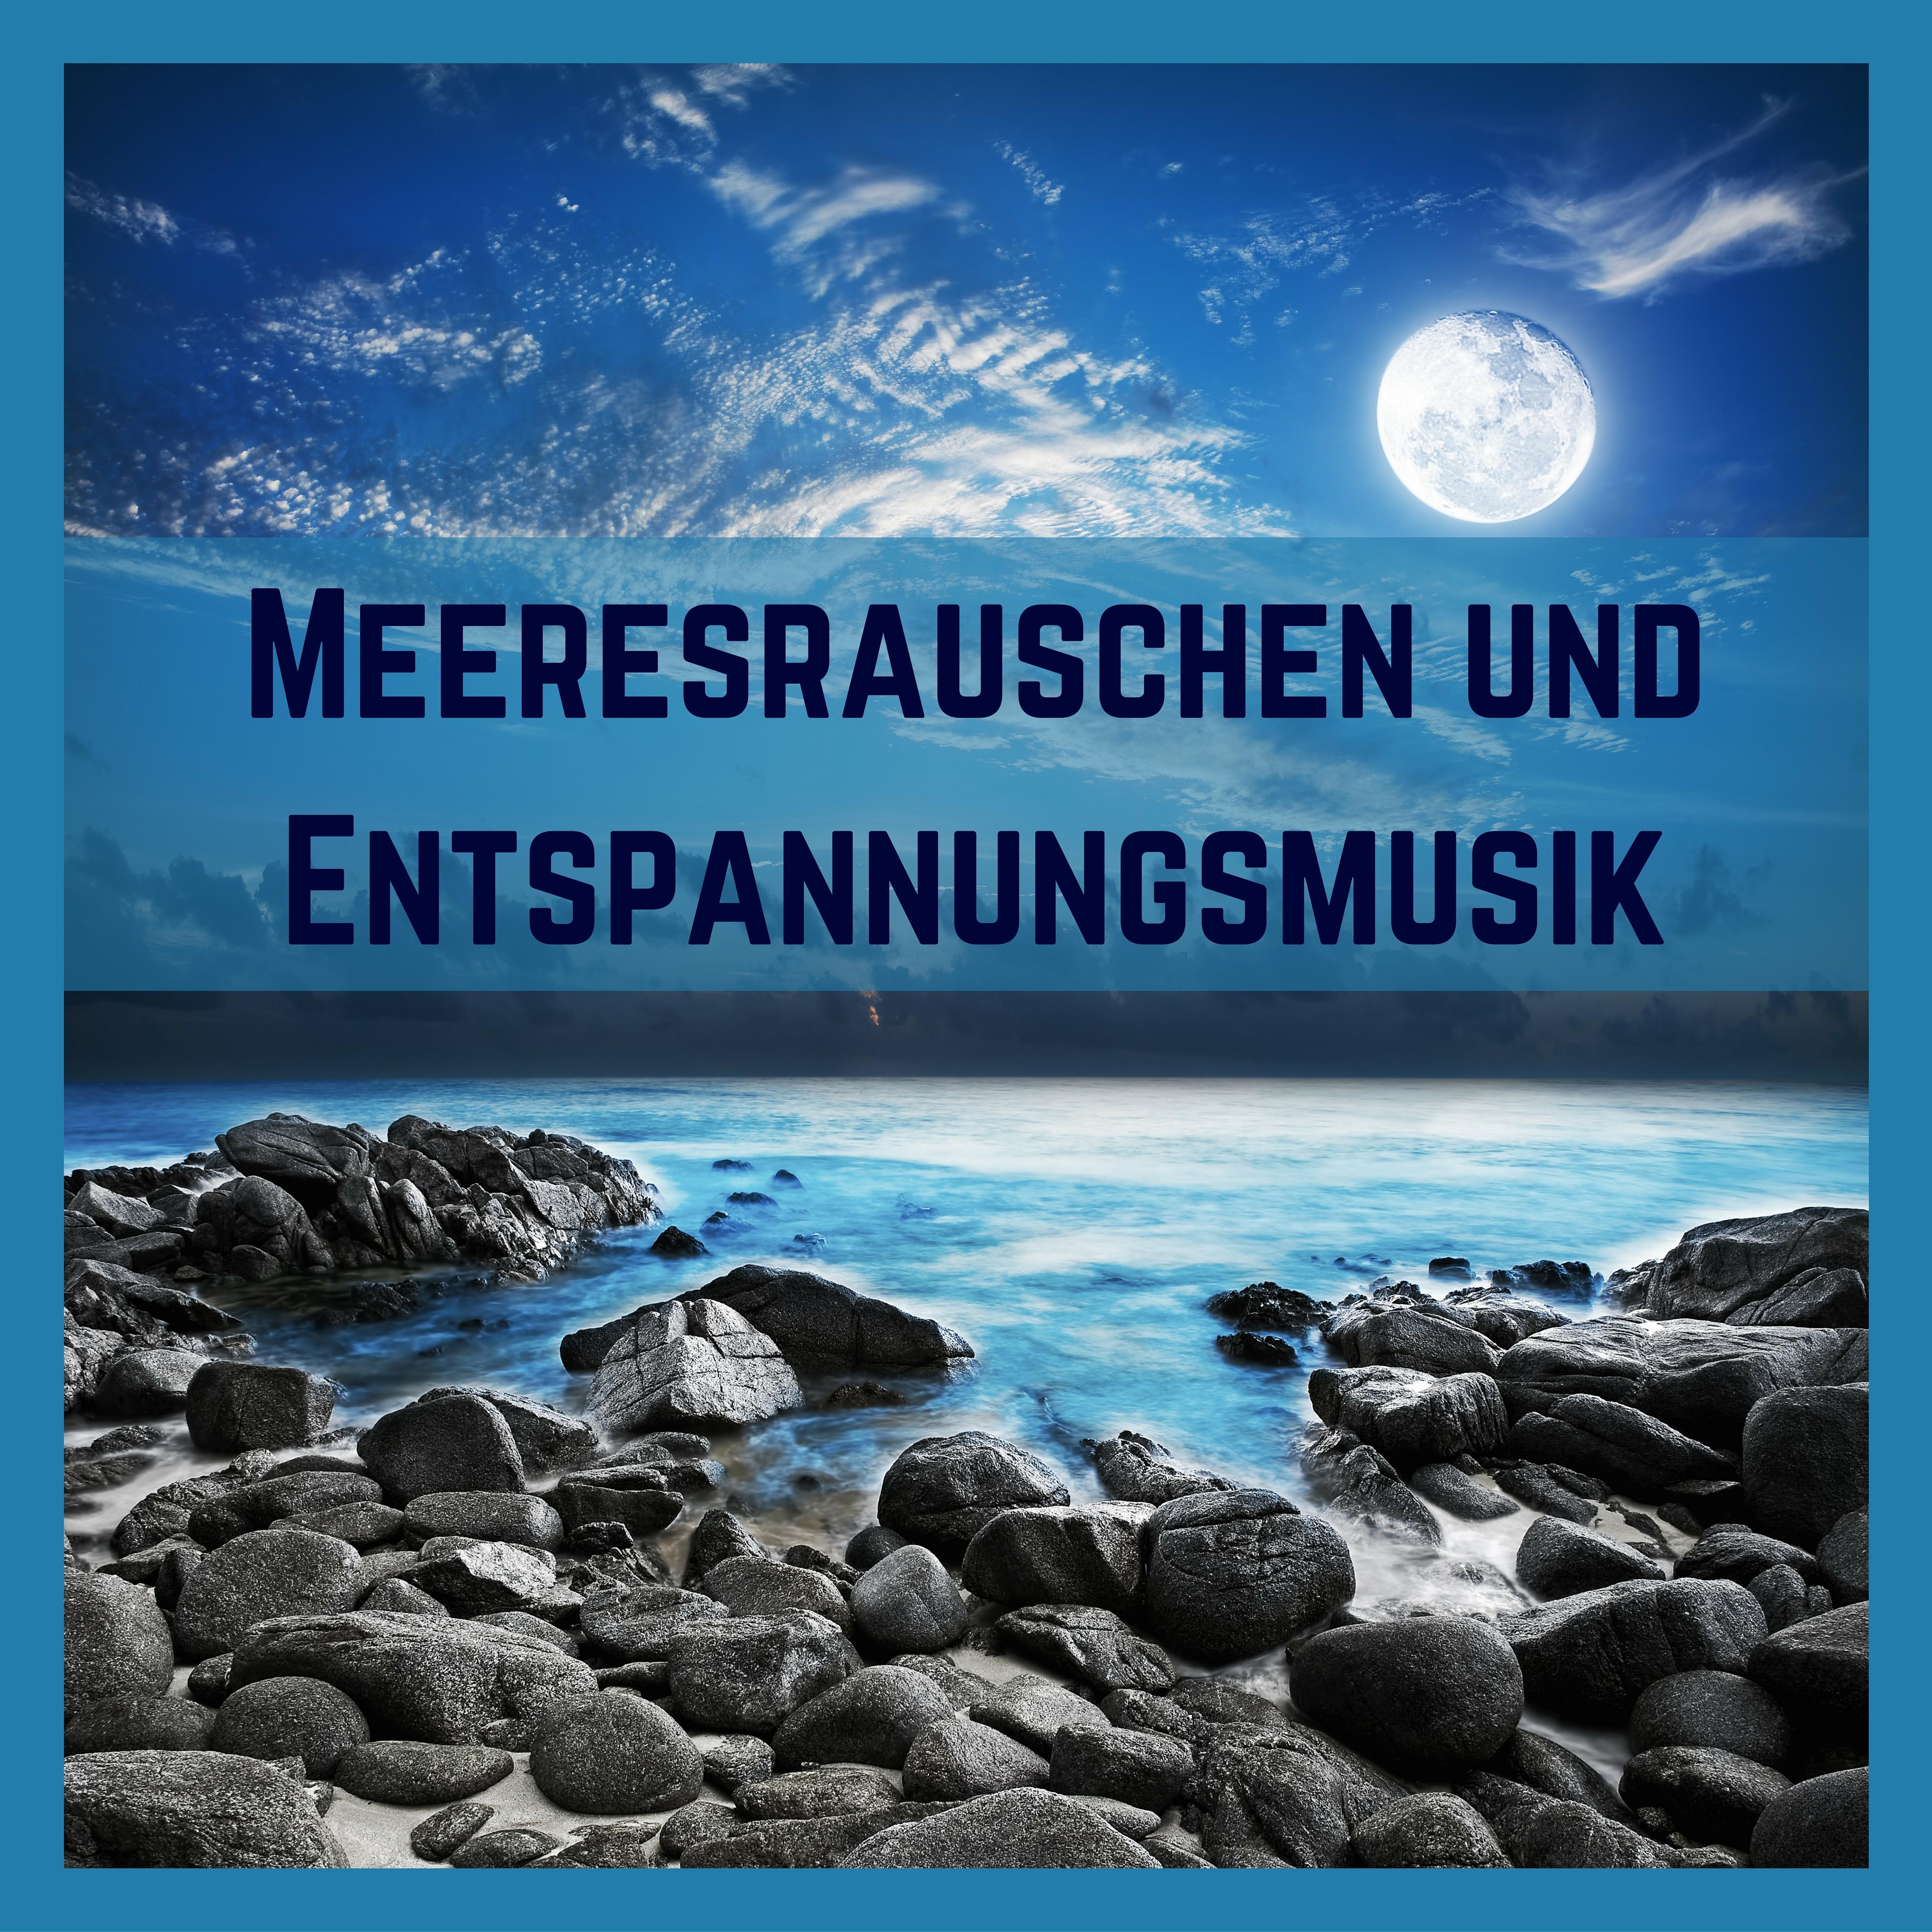 Meeresrauschen und Entspannungsmusik  25 Top Meditationsmusik und Sanfte Musik mit Naturger uschen am Meer Hohe Qualit t